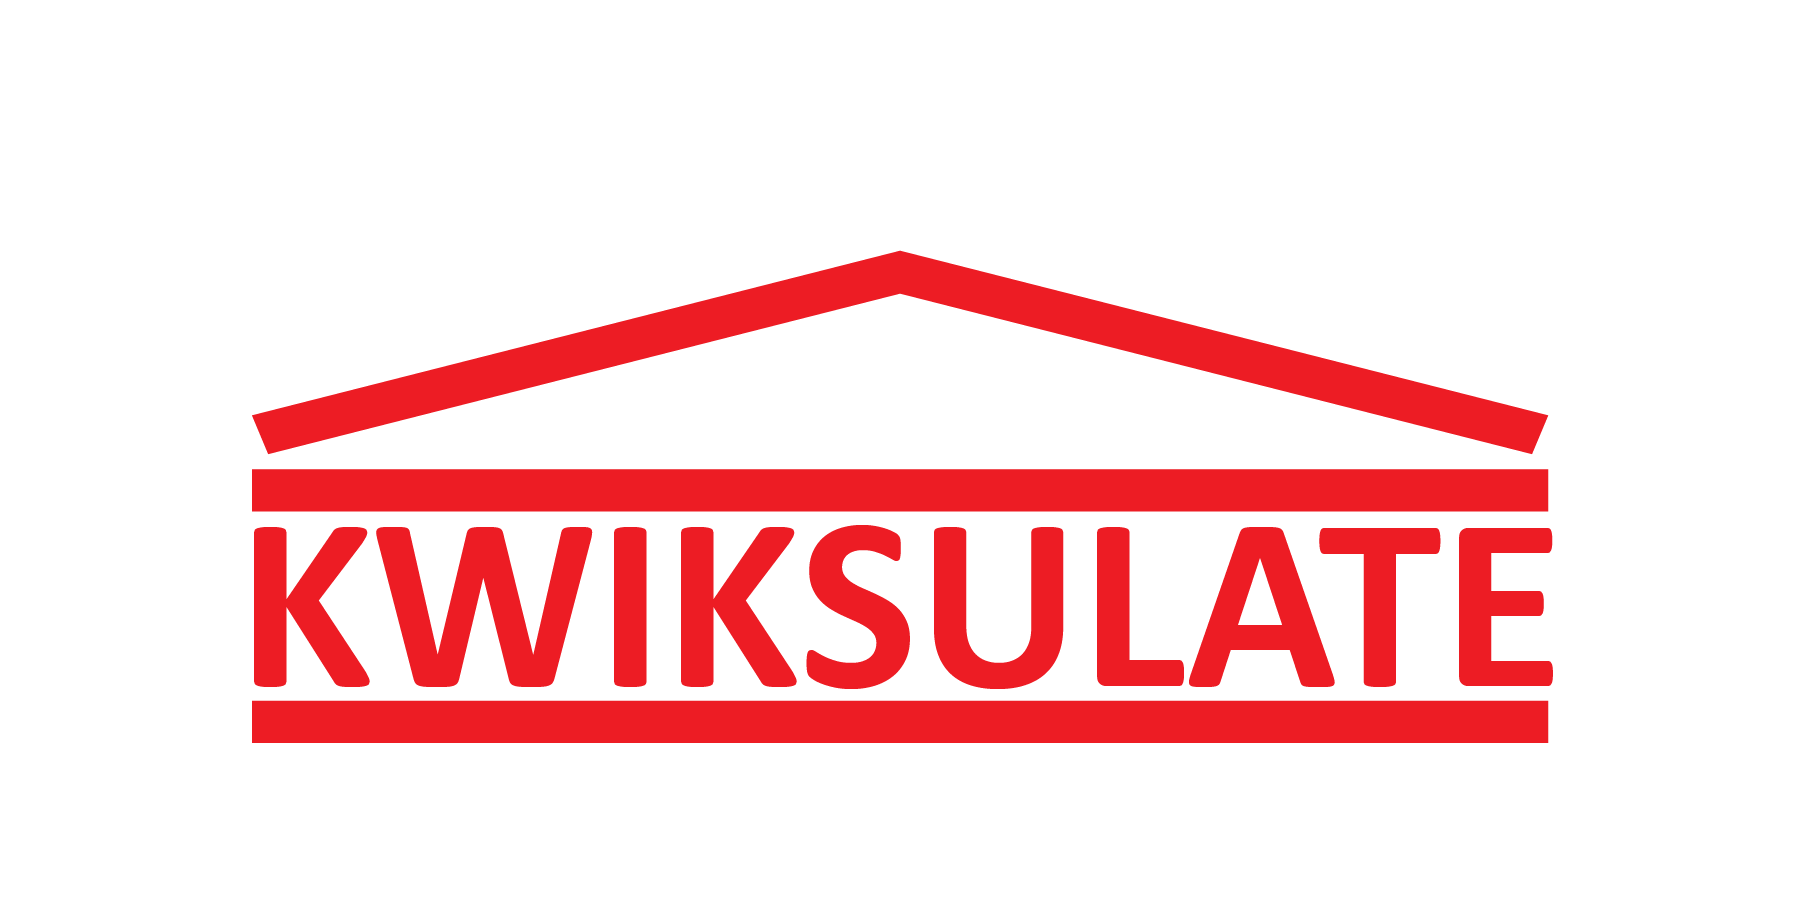 Kwiksulate logo